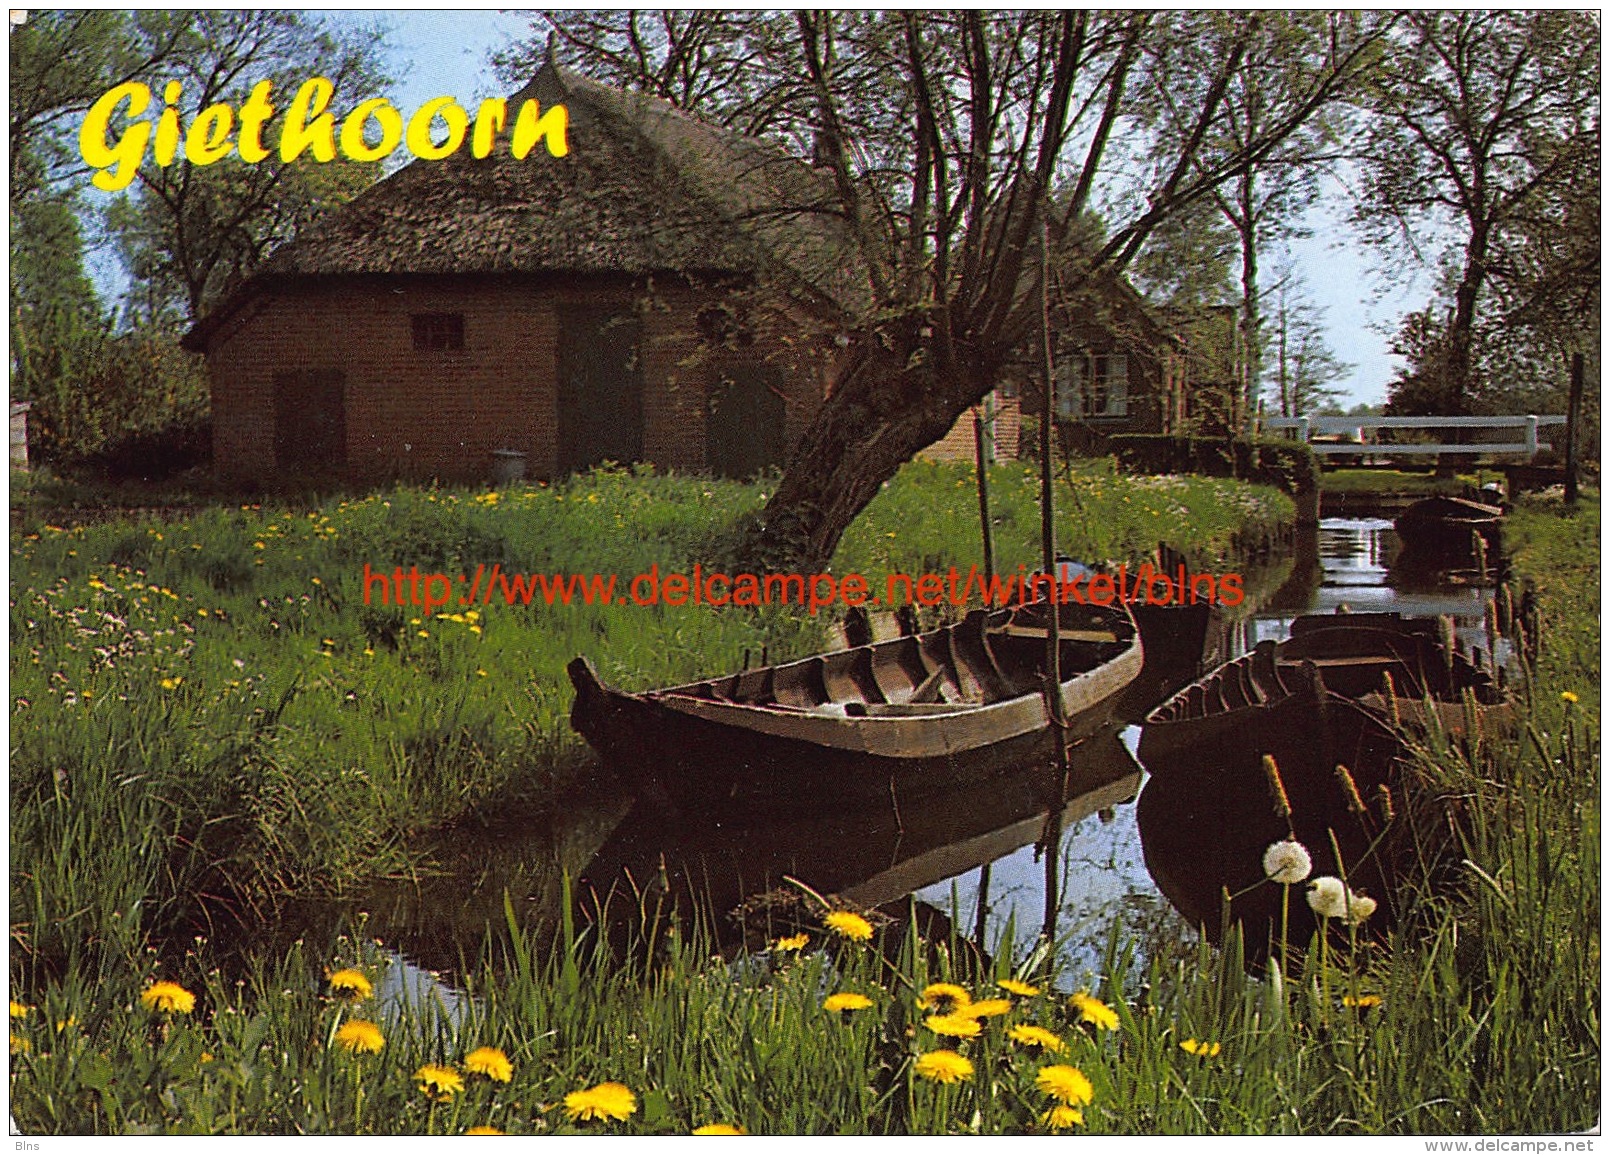 Giethoorn - Giethoorn